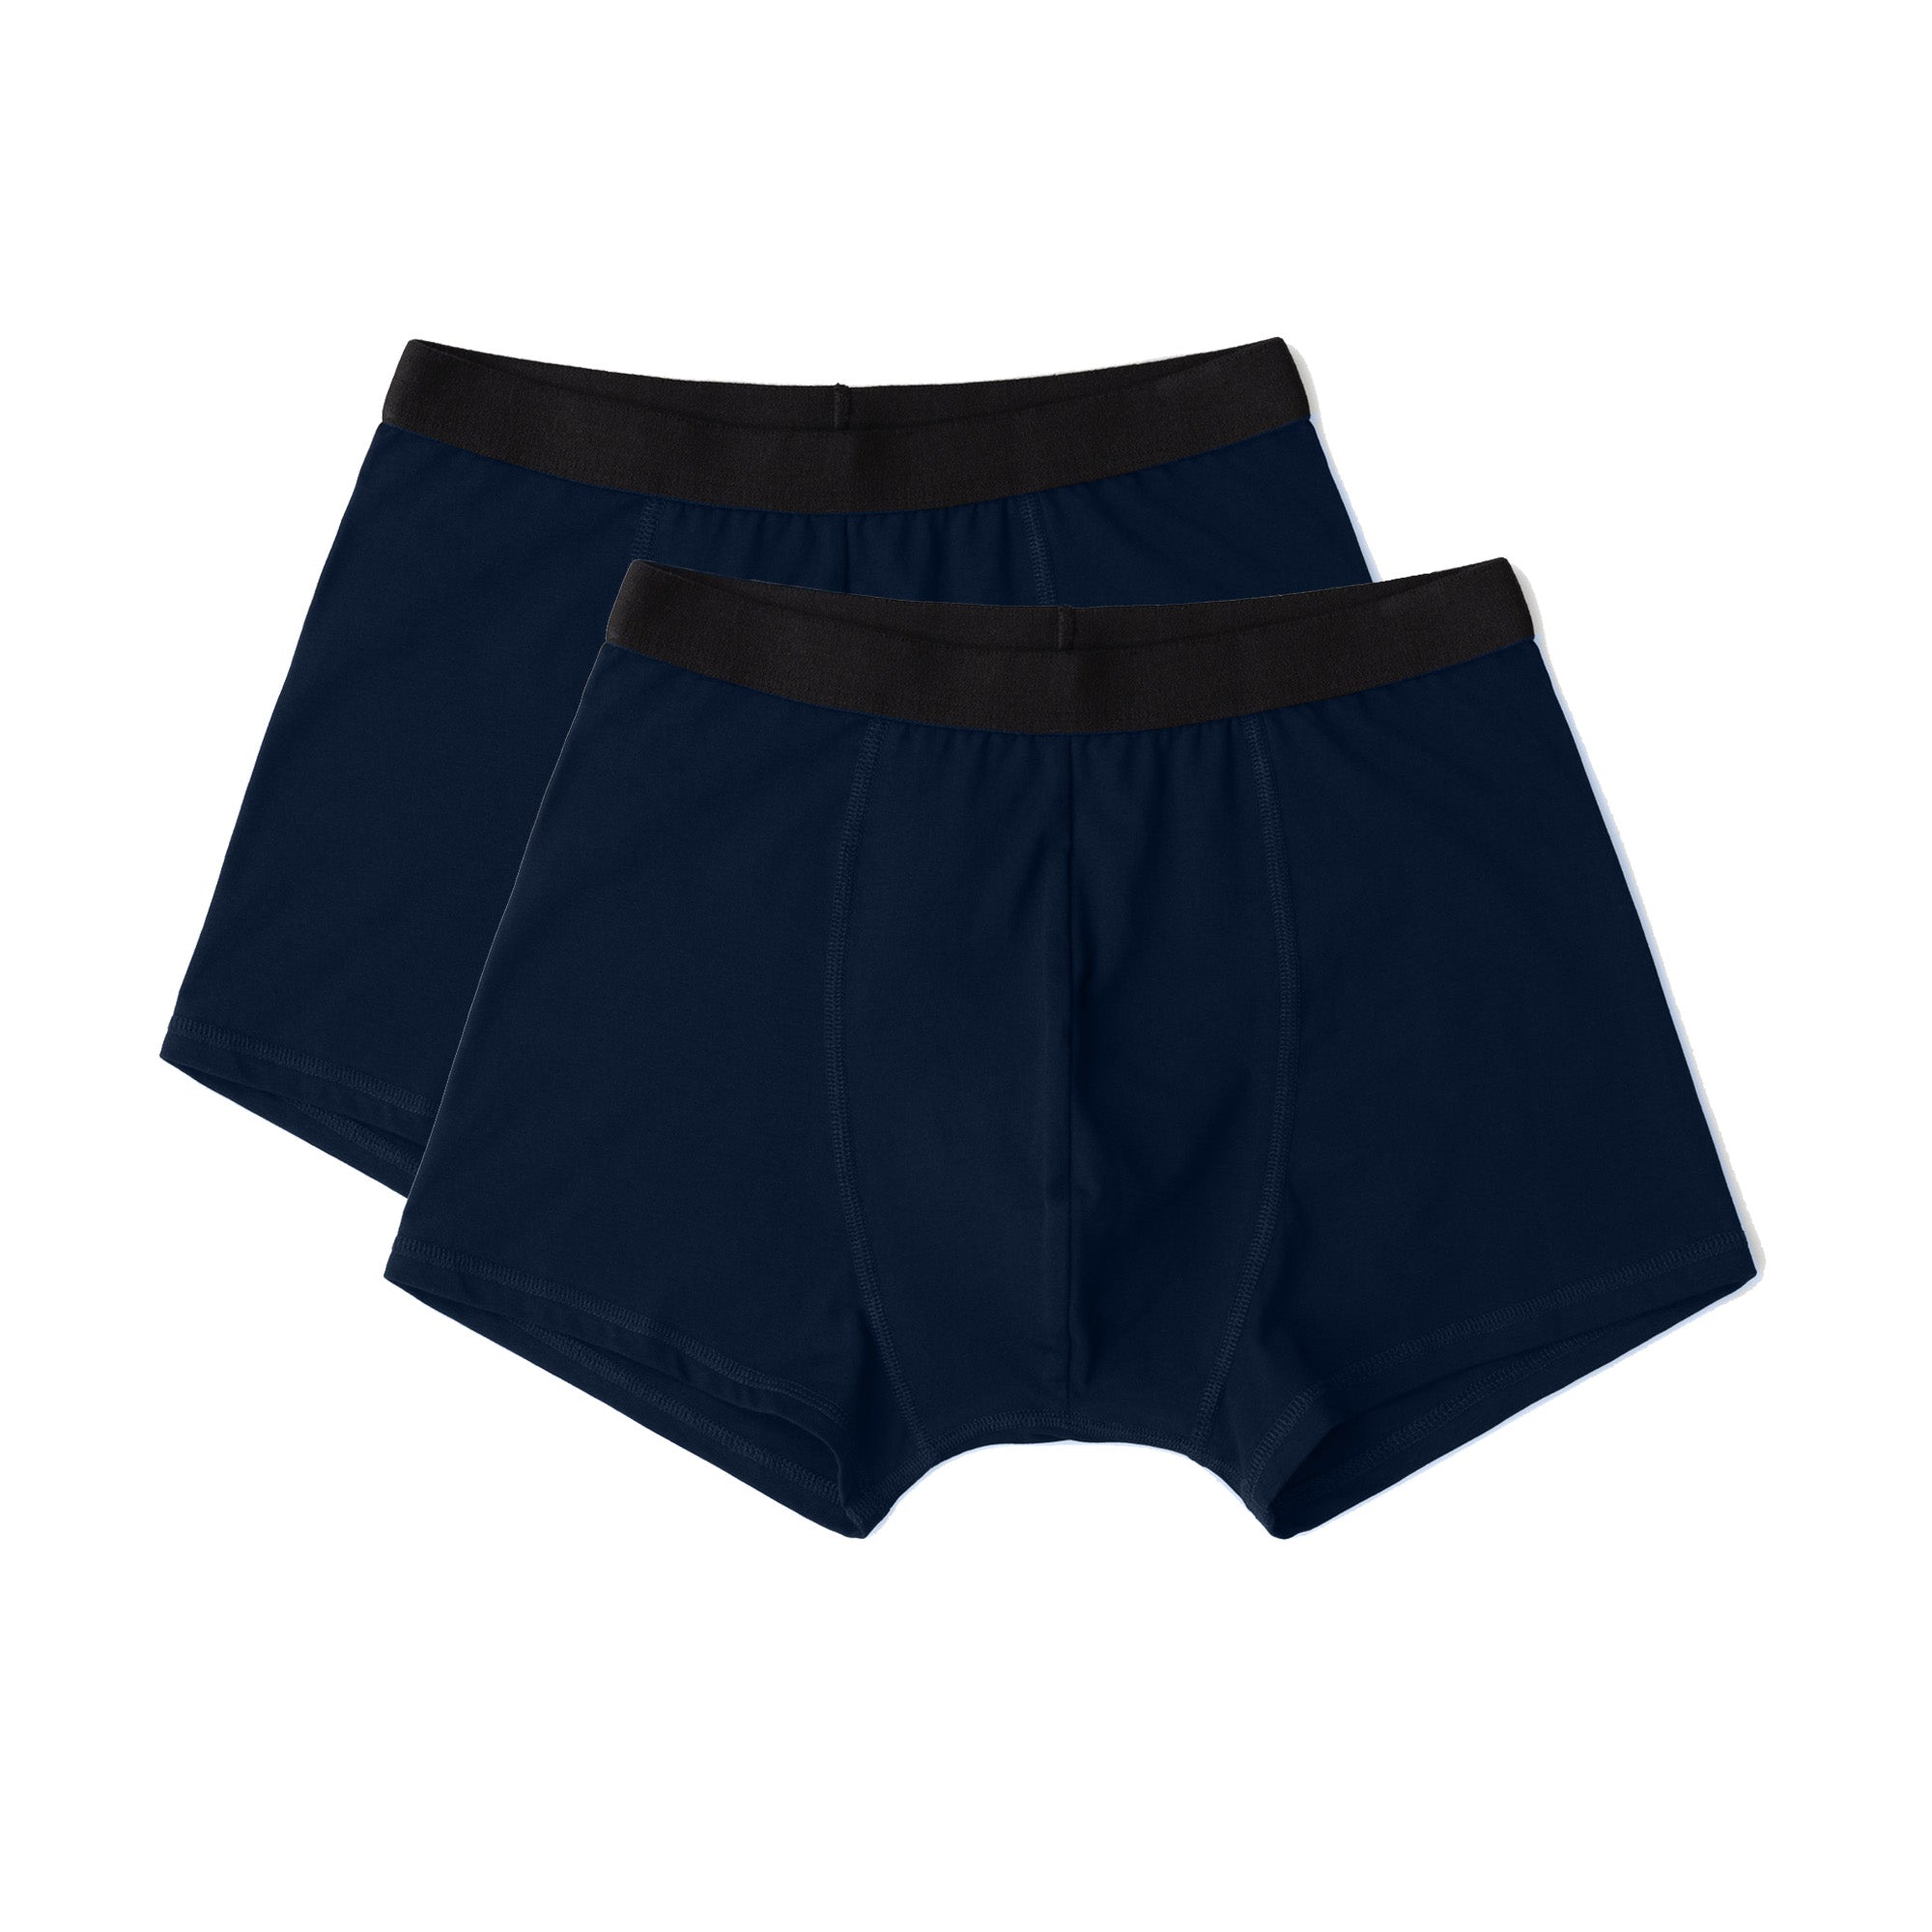 Solid organic cotton boxer briefs 2-pack, Le 31, Shop Men's Underwear  Multi-Packs Online